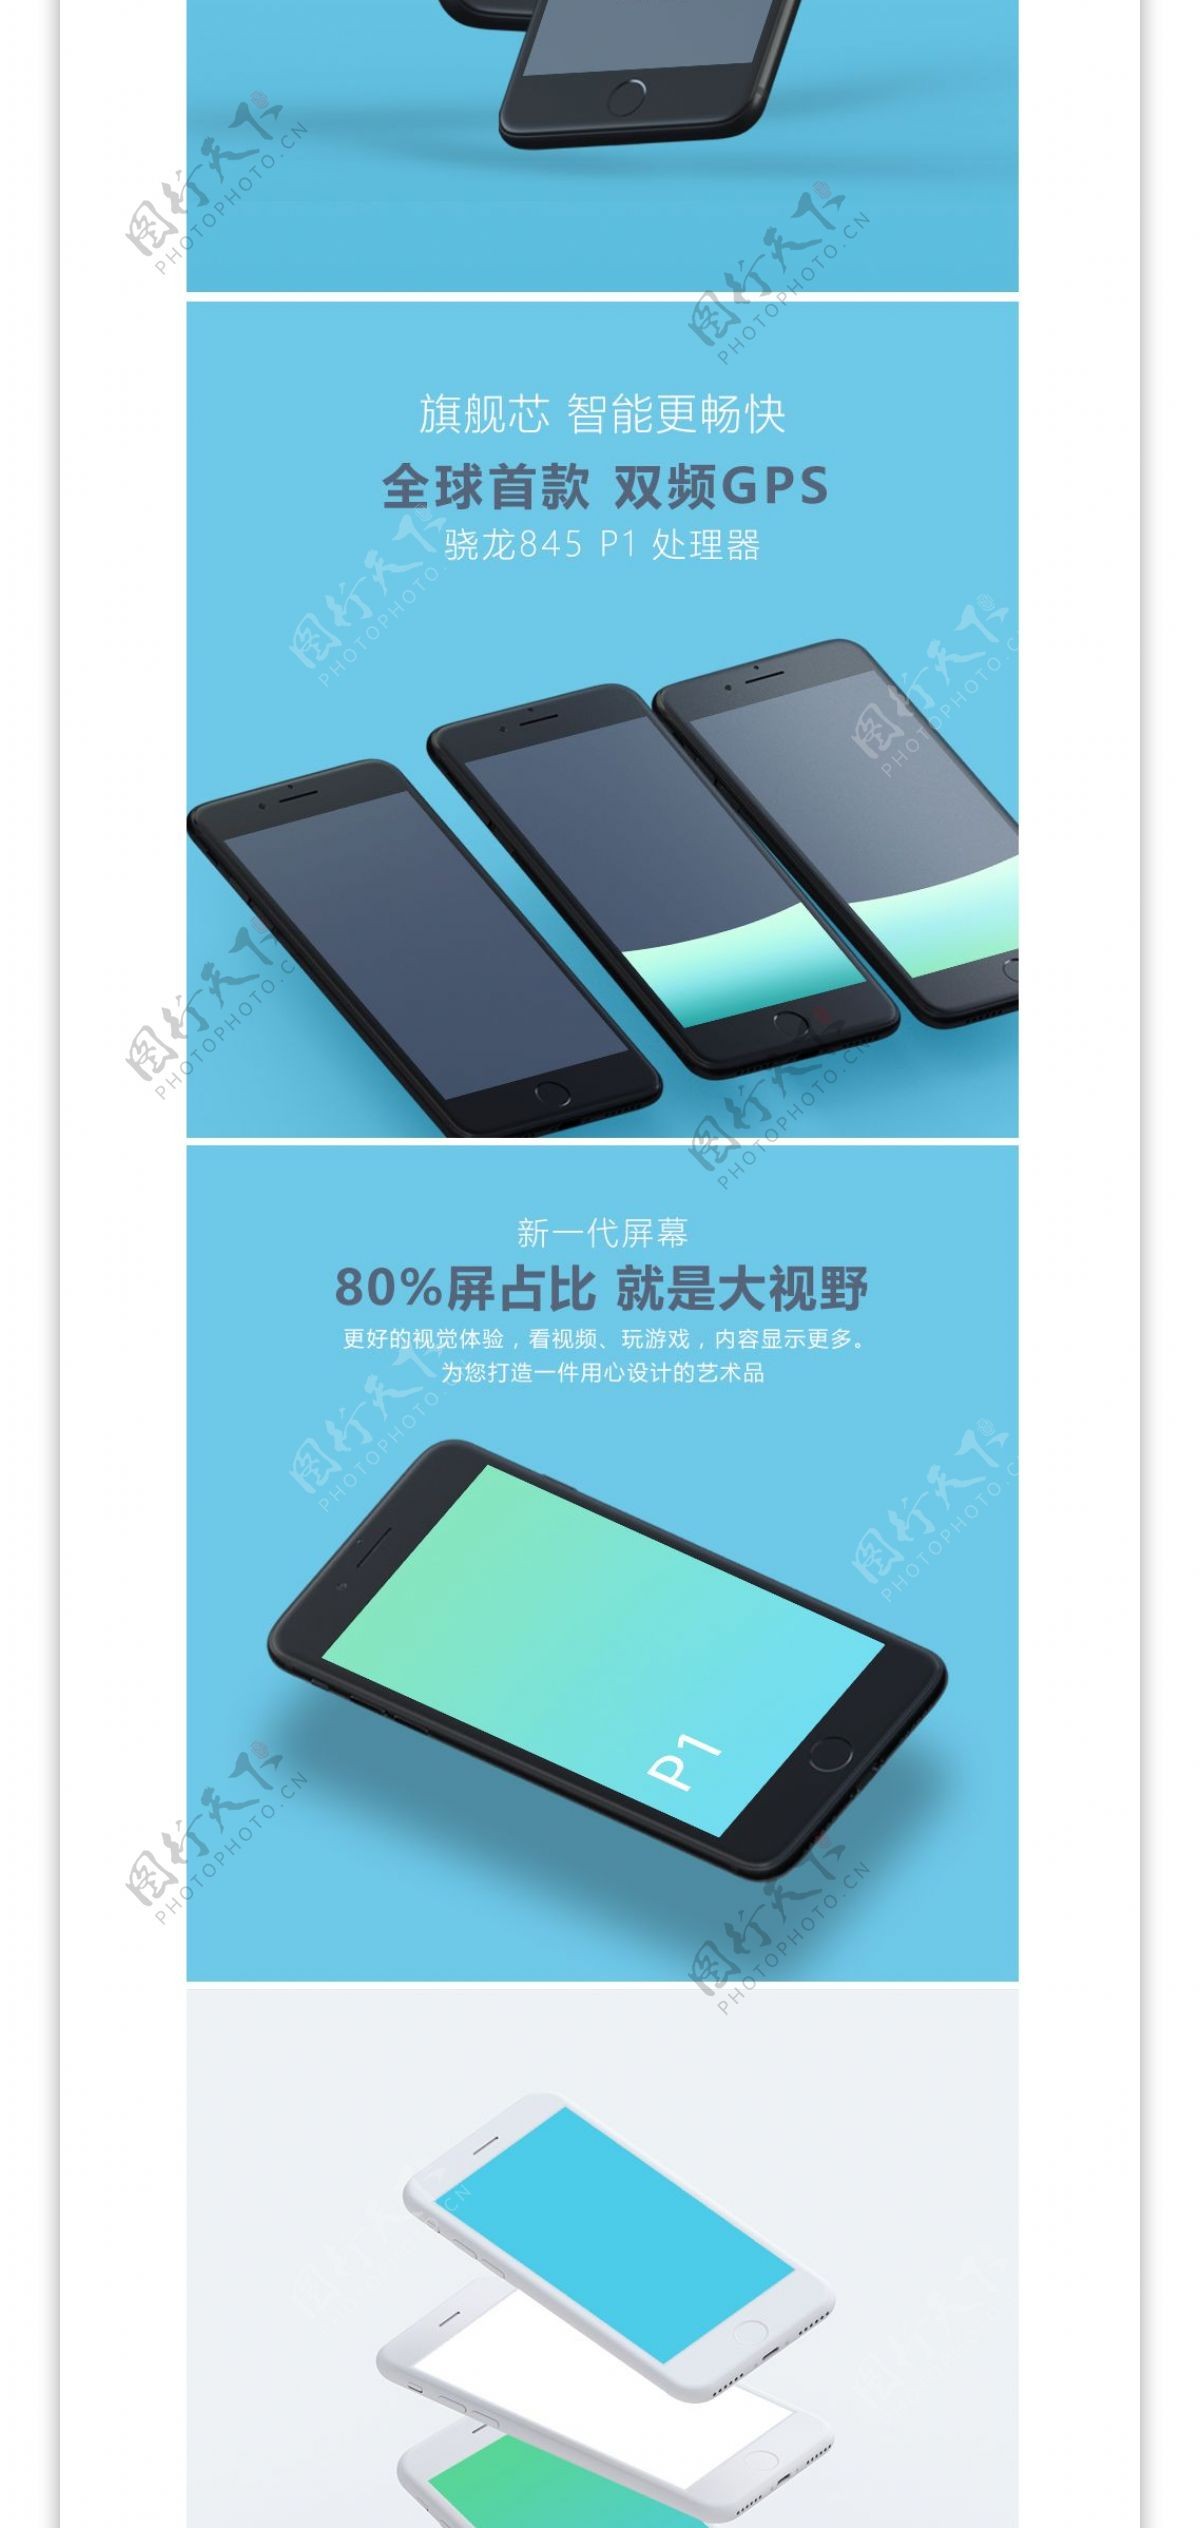 蓝色高端数码电器苹果小米手机详情页模板